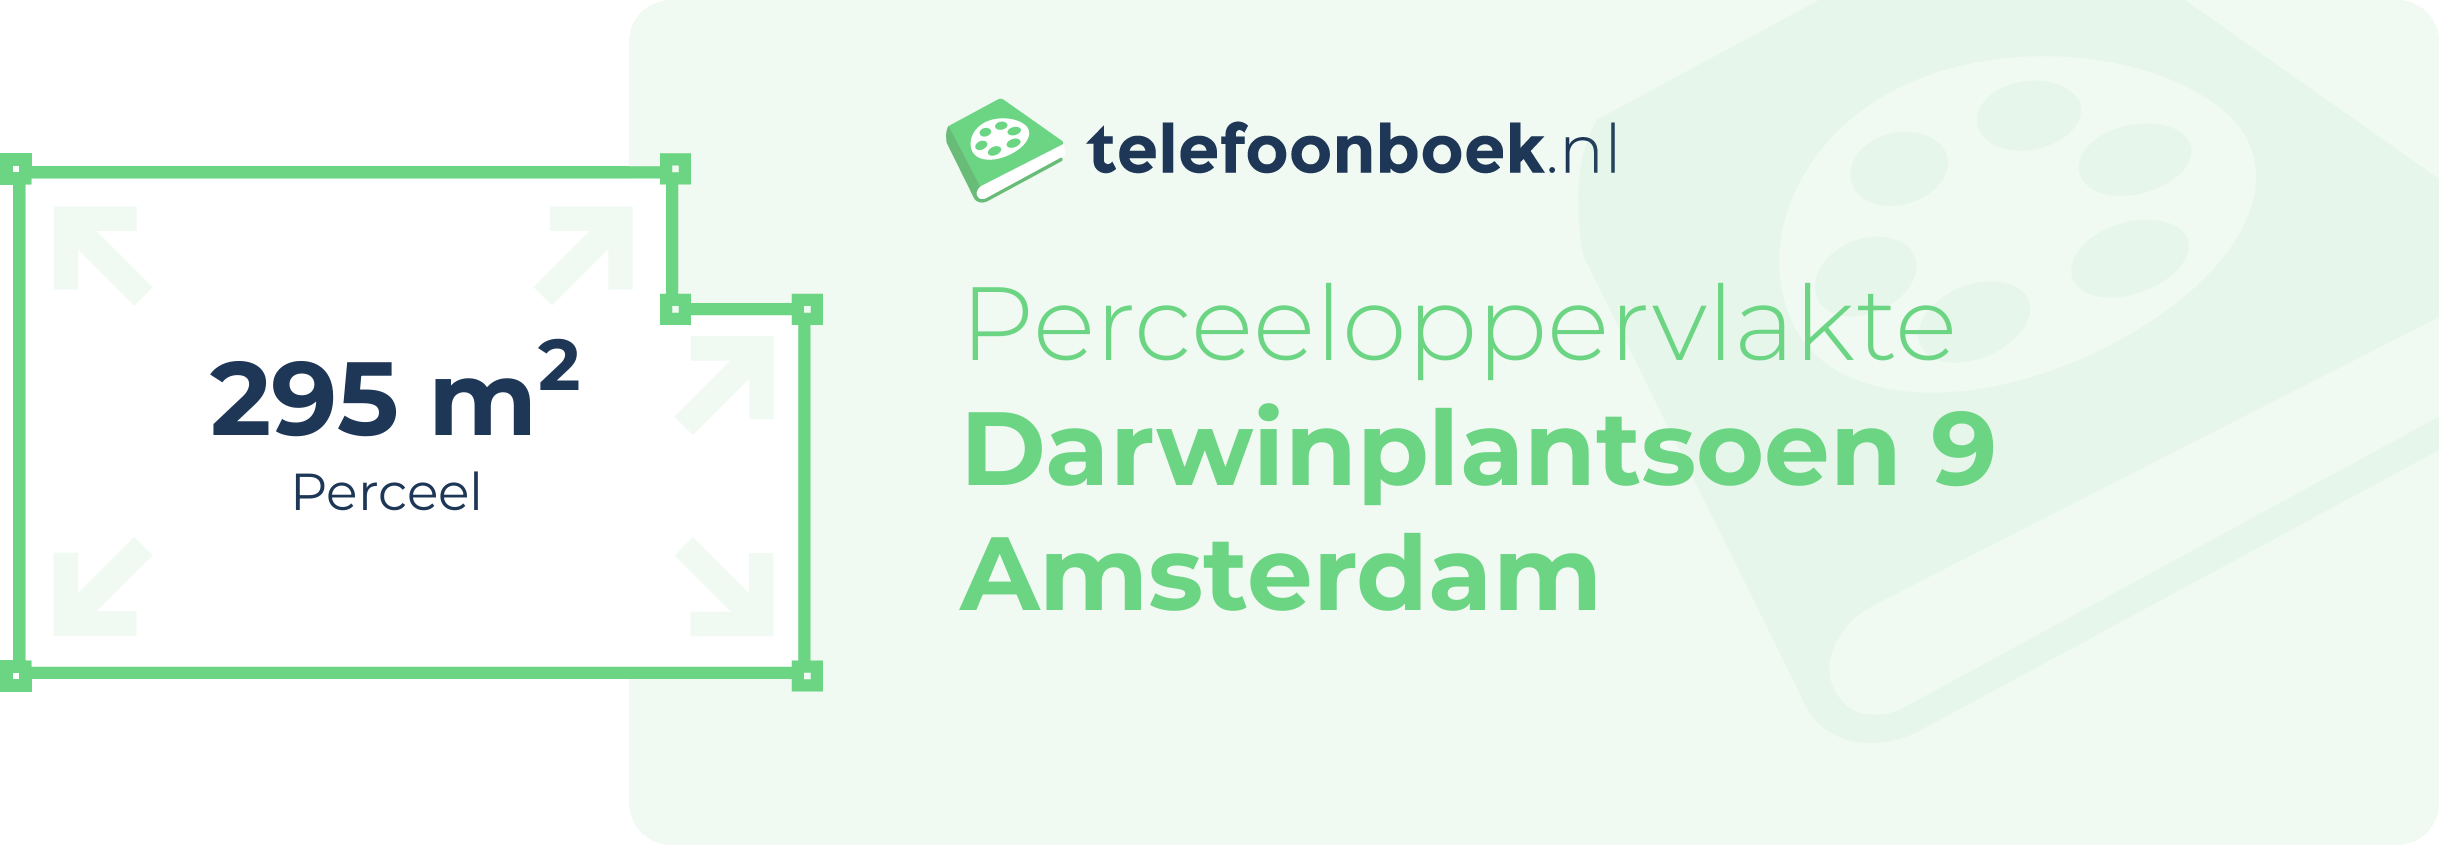 Perceeloppervlakte Darwinplantsoen 9 Amsterdam